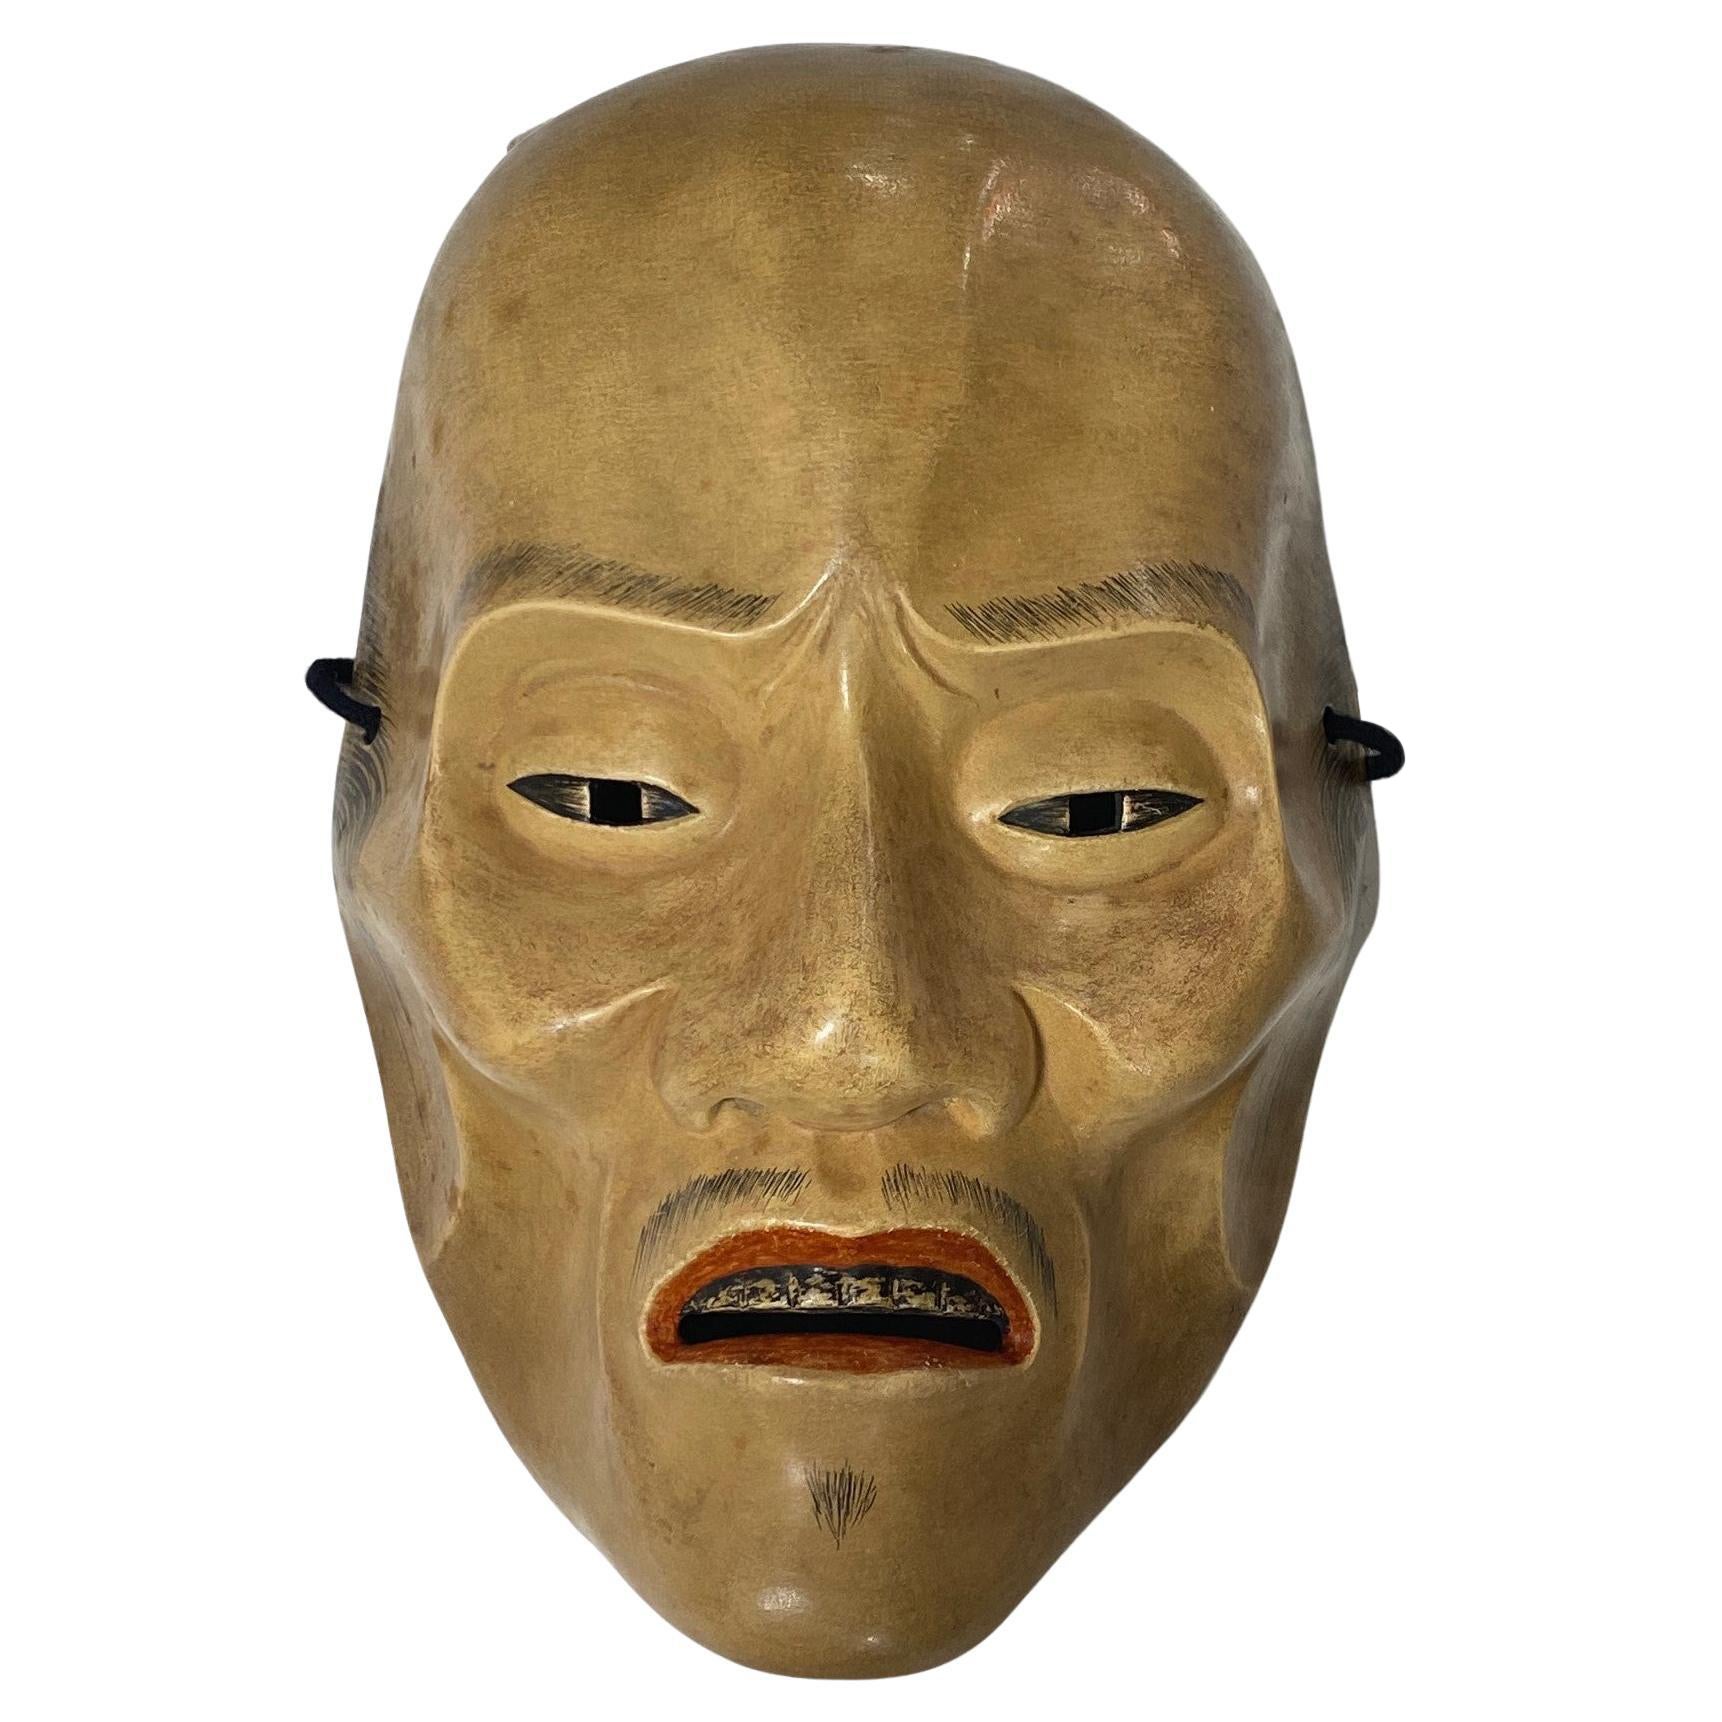 Japanese Showa Hand Carved Wood Noh Theater Mask of Yase Otoko Yaseotoko